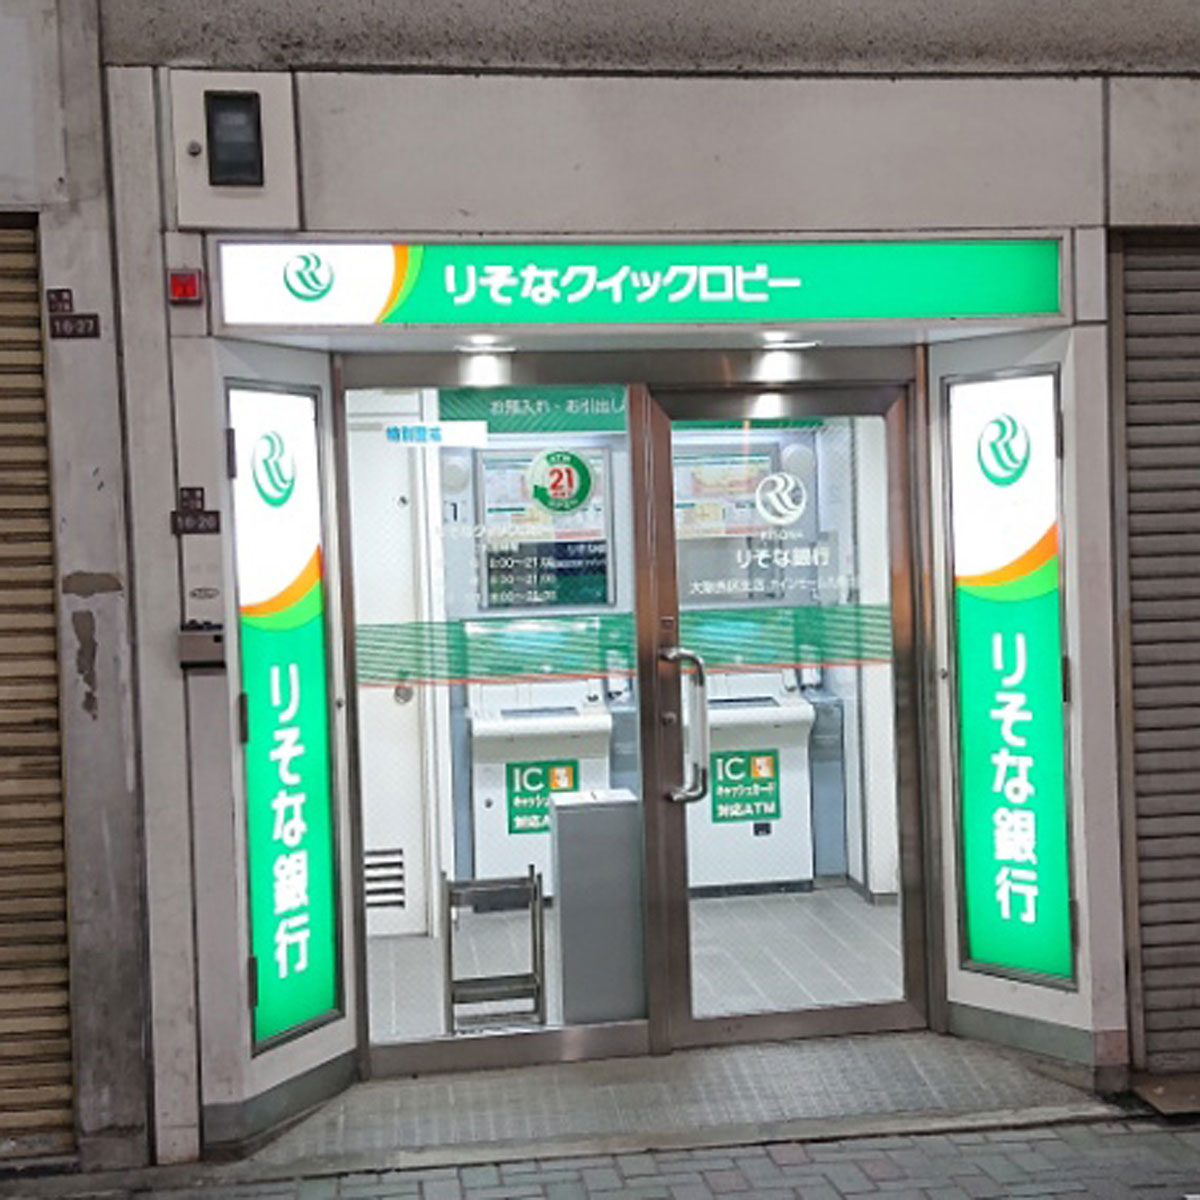 松島新地 - りそな銀行 ナインモール九条出張所